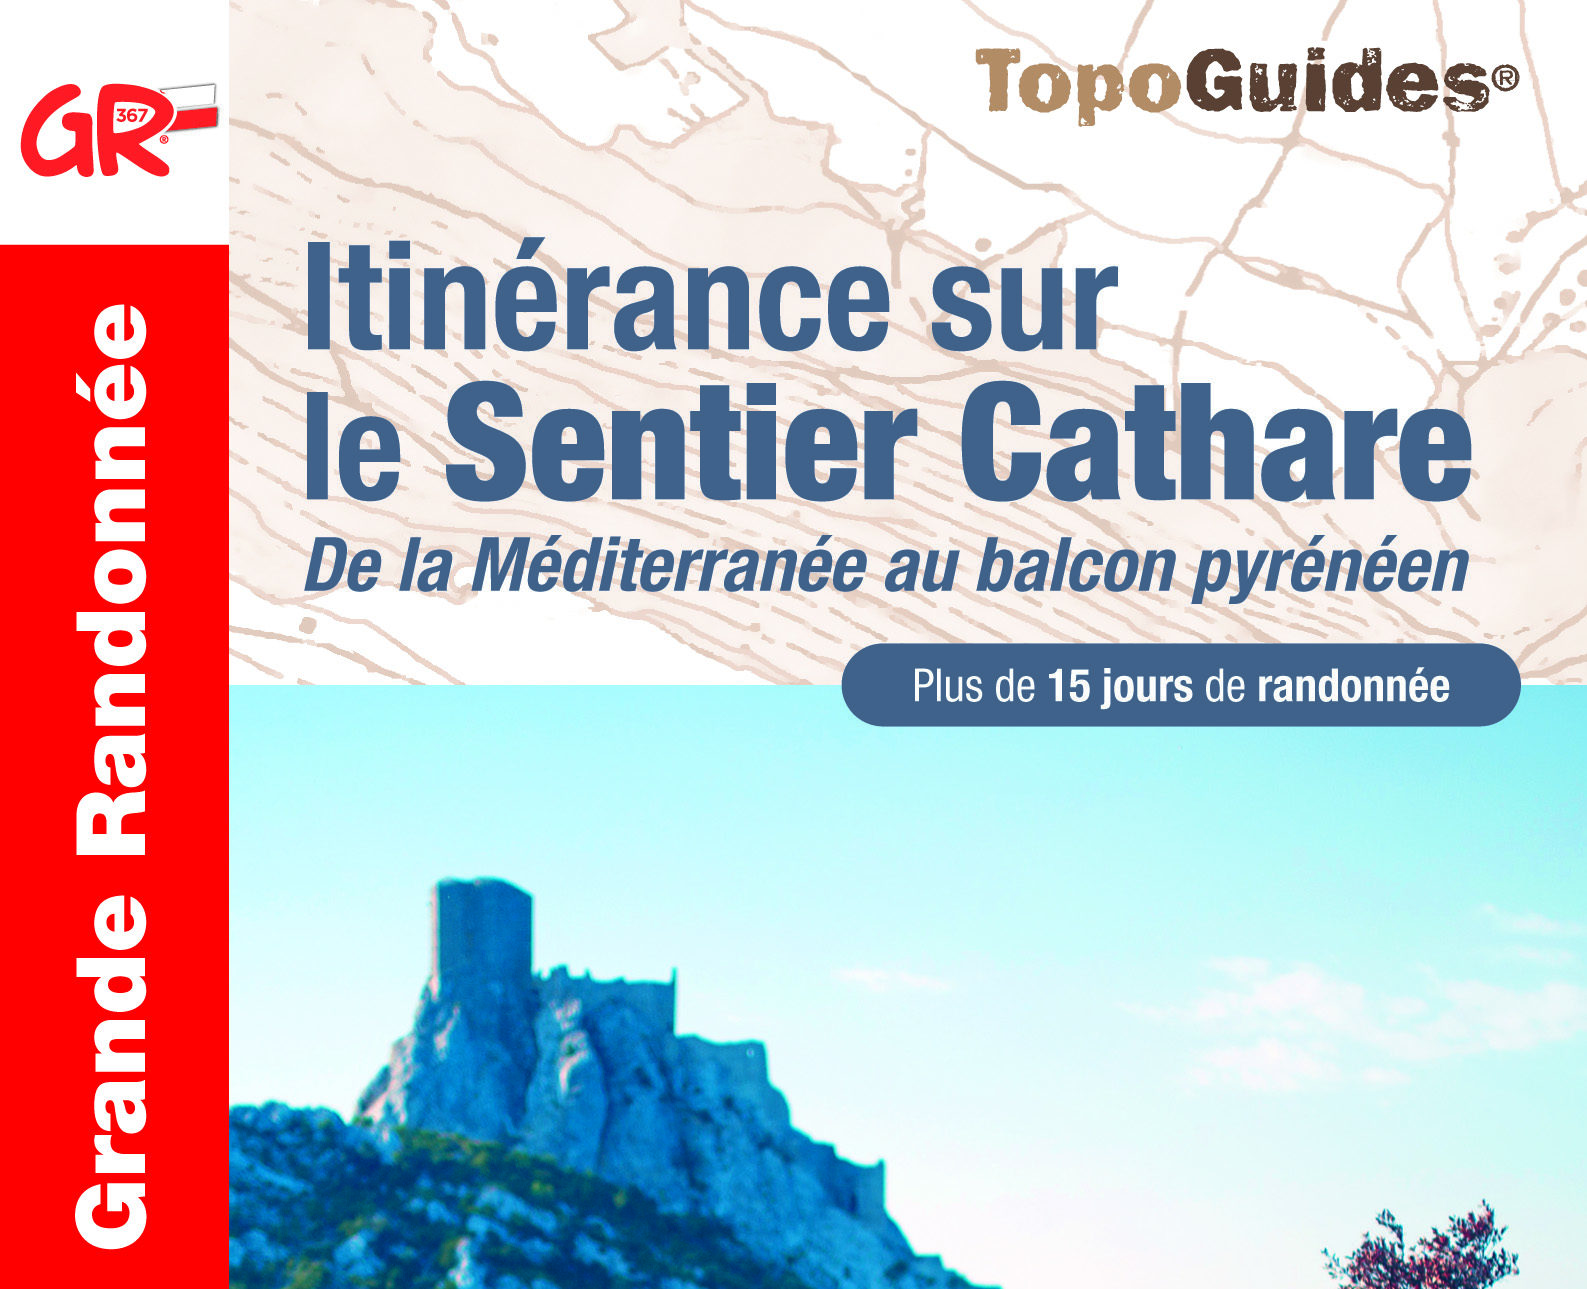 Nouveauté Topo Guide : Itinérance sur le Sentier Cathare